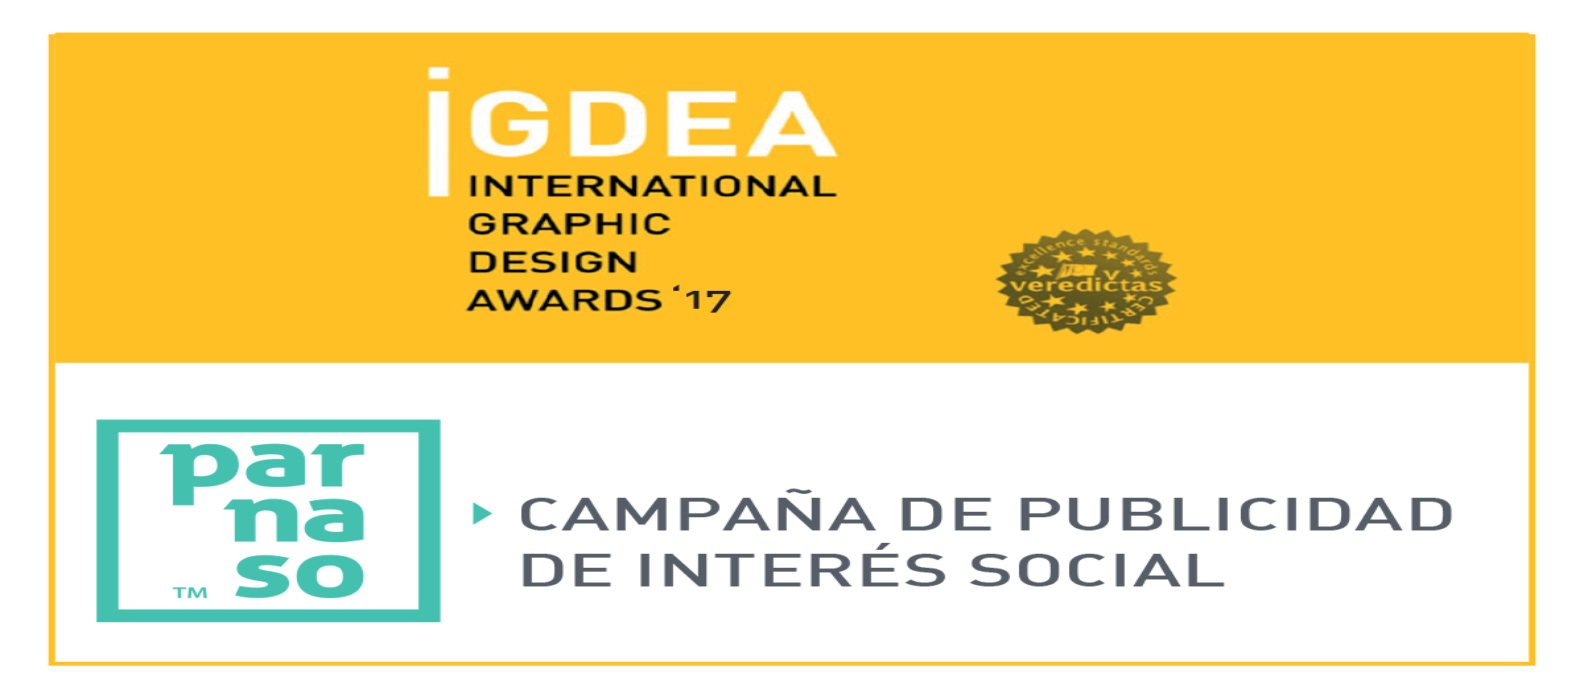 Ganamos un nuevo premio internacional en IGDEA Awards - Parnaso